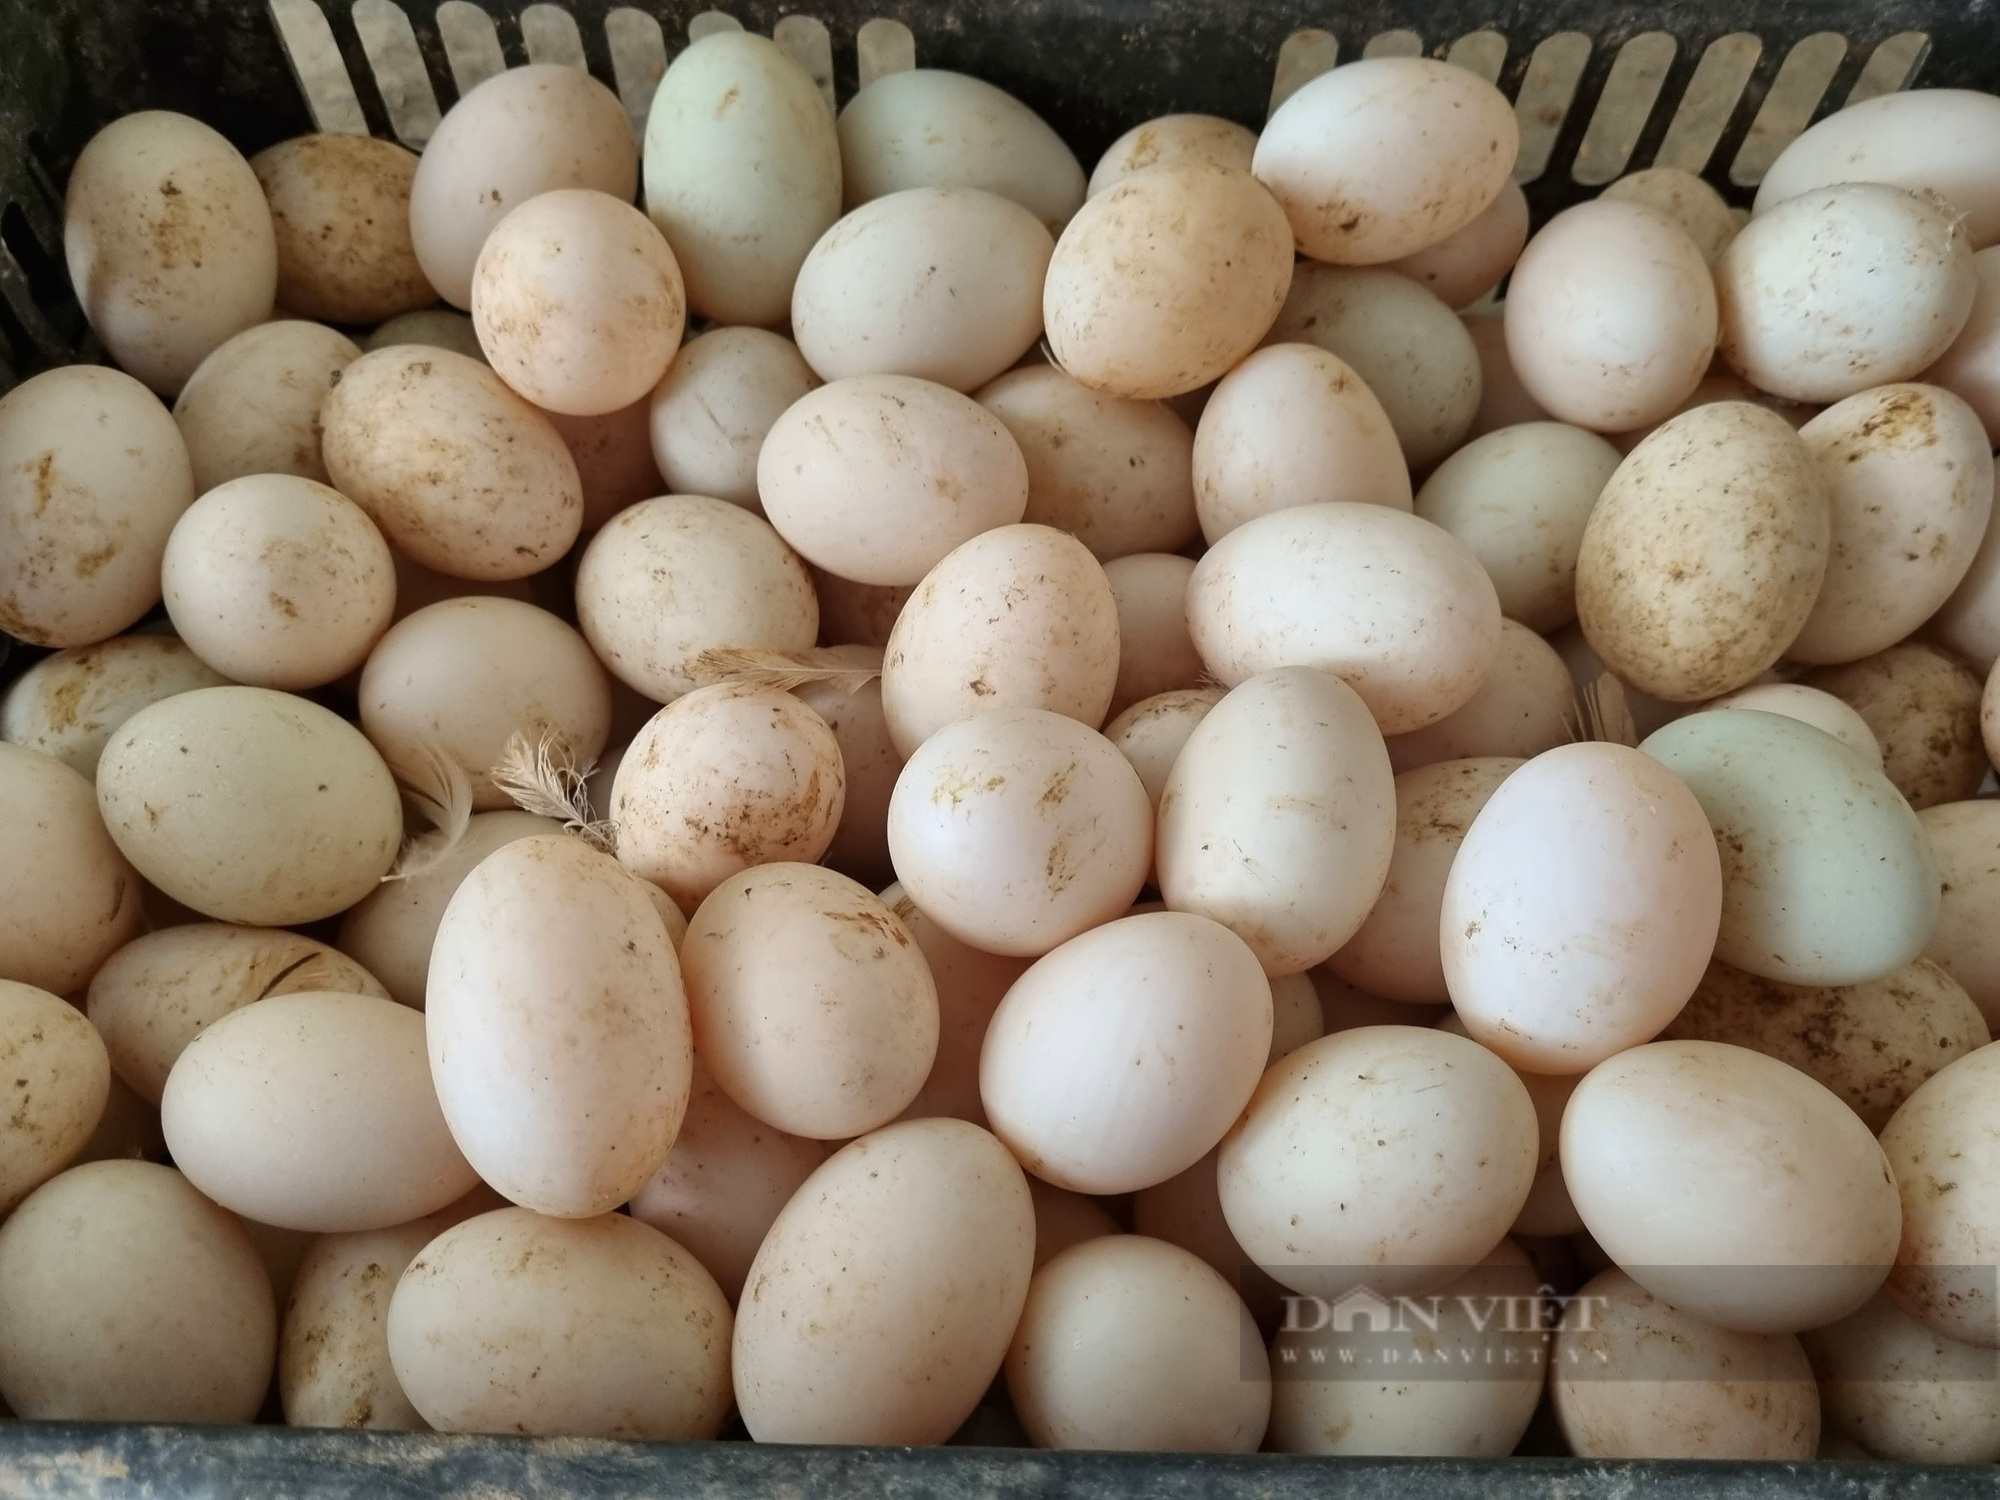 9X Ninh Bình nuôi 12.000 con vịt đẻ trứng lãi gần 200 triệu đồng/năm - Ảnh 4.